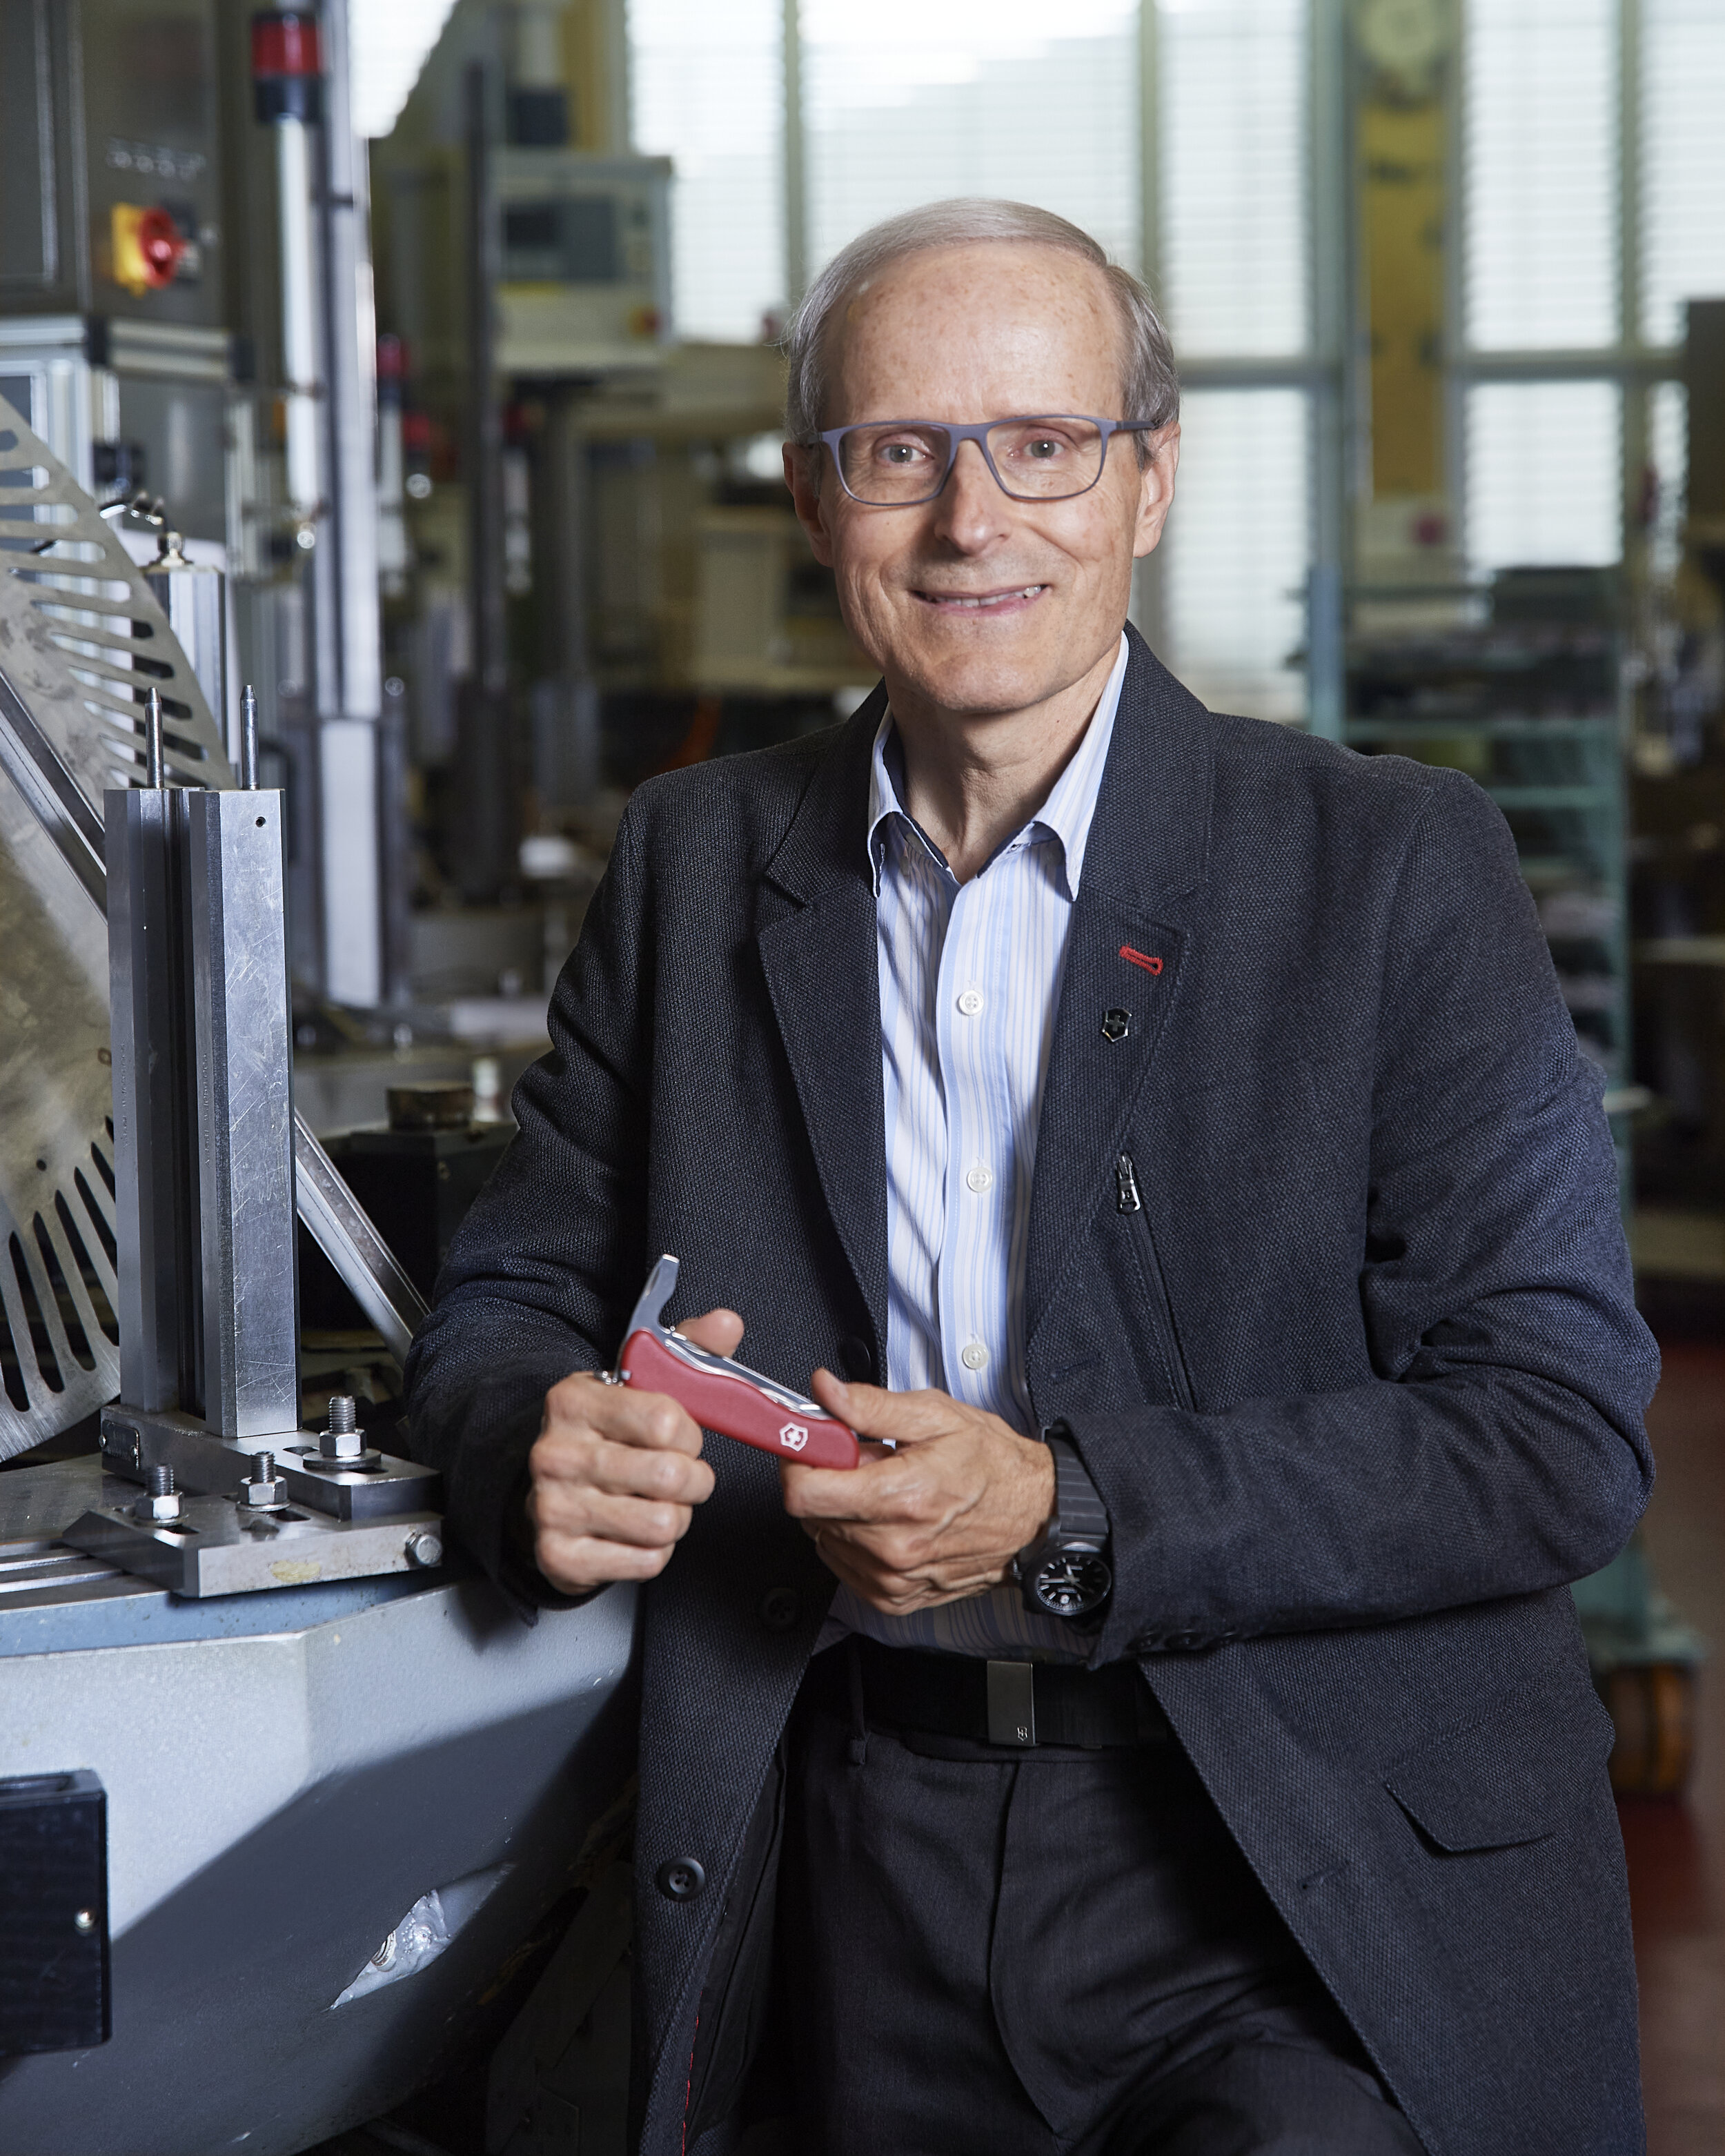 Carl Elsener (* 1958) ist ein Schweizer Unternehmer und seit 2007 Group CEO der Victorinox AG, einem Messerhersteller in Familienbesitz "Swiss Army Knive" mit über 2000 Mitarbeitern. 